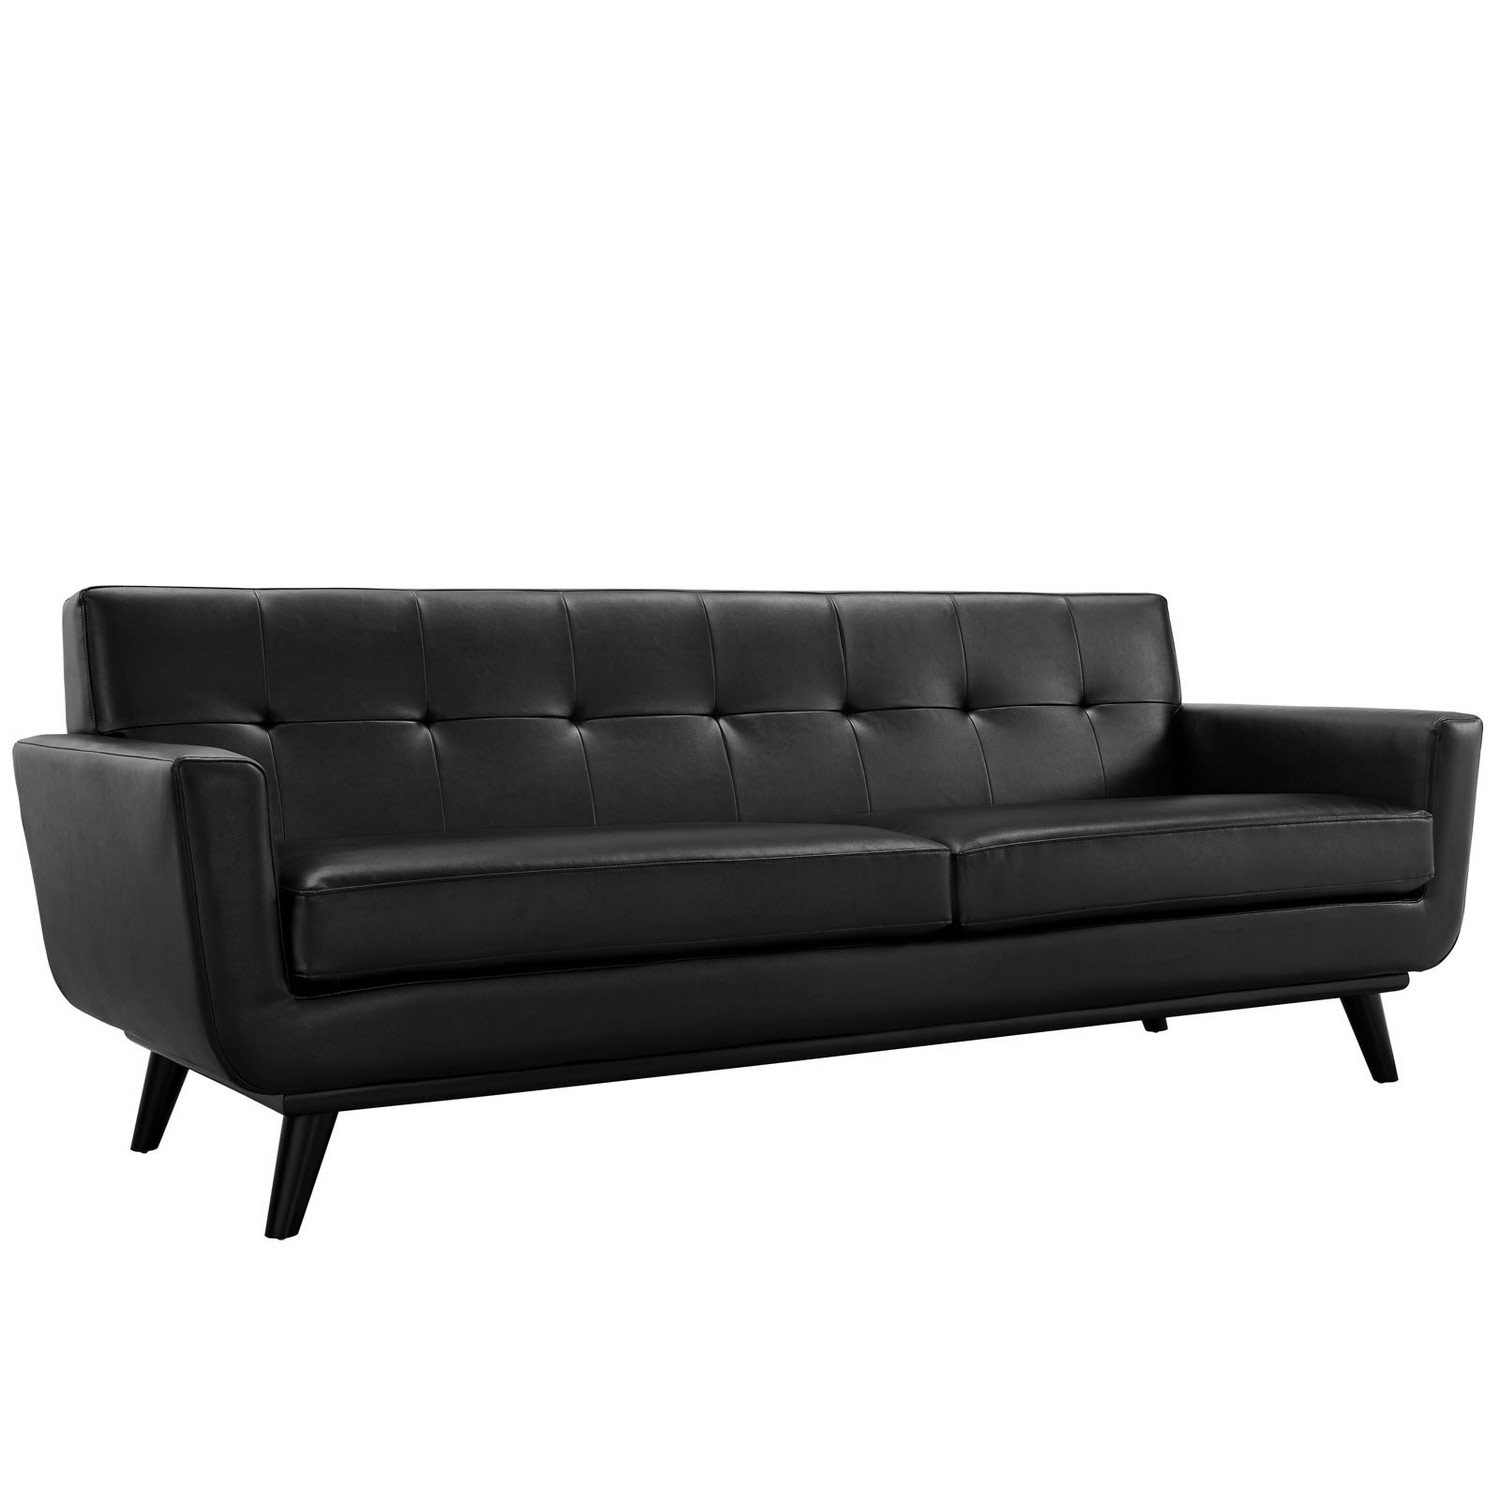 Modway Engage Bonded Leather Sofa - Black